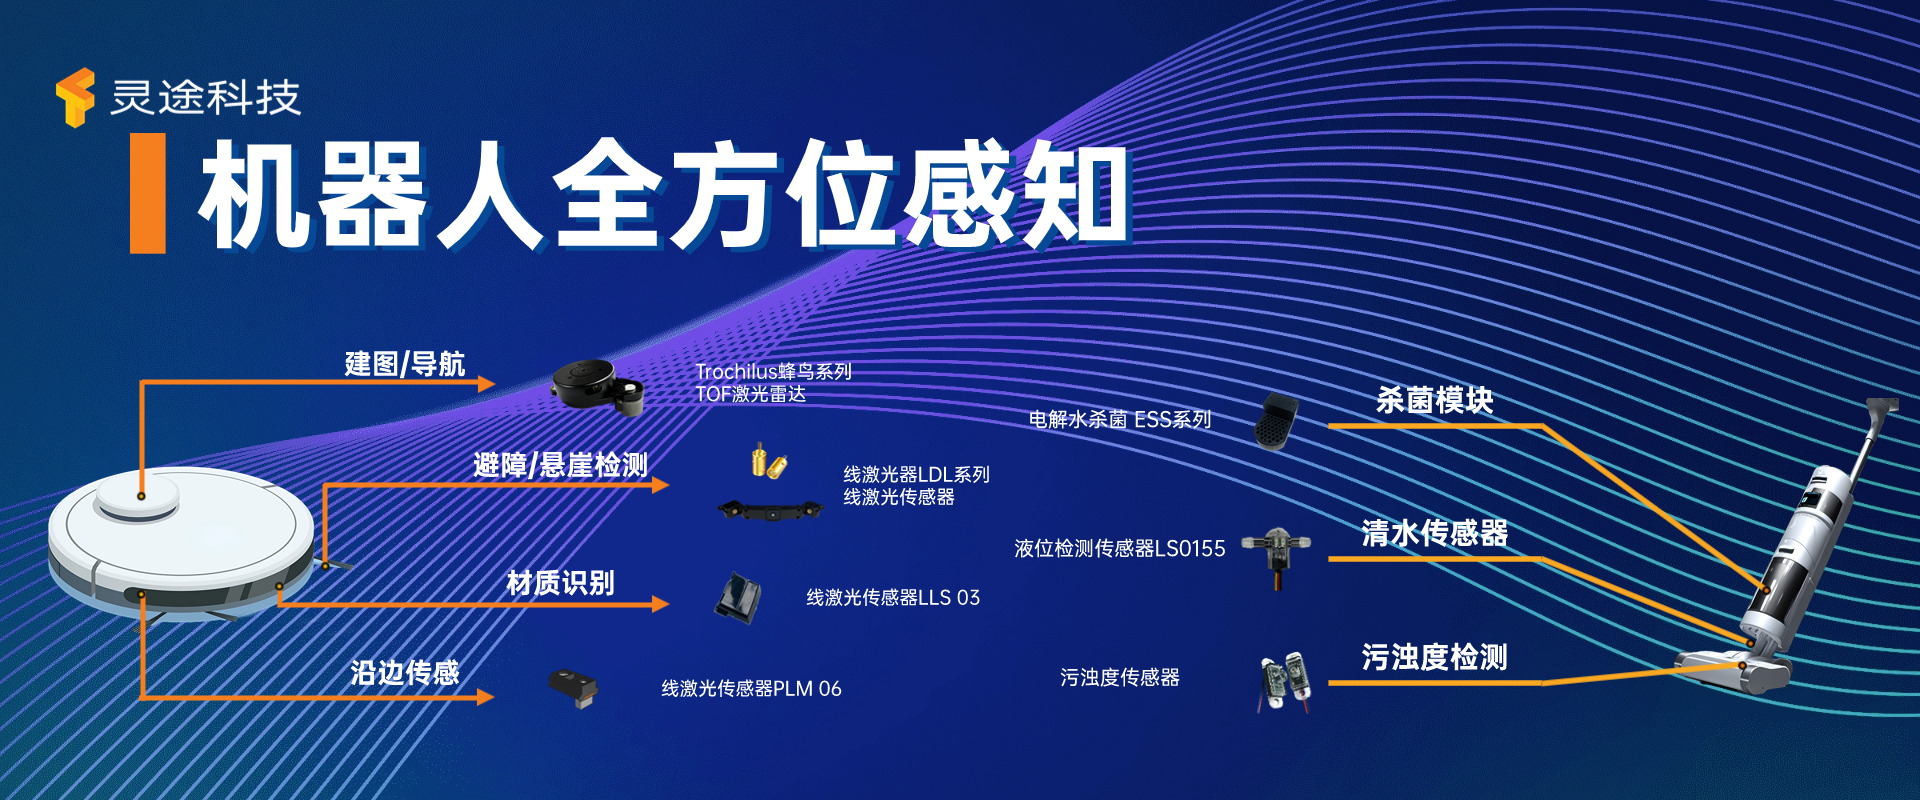 武汉灵途传感科技有限公司| 专注于激光雷达传感器及解决方案